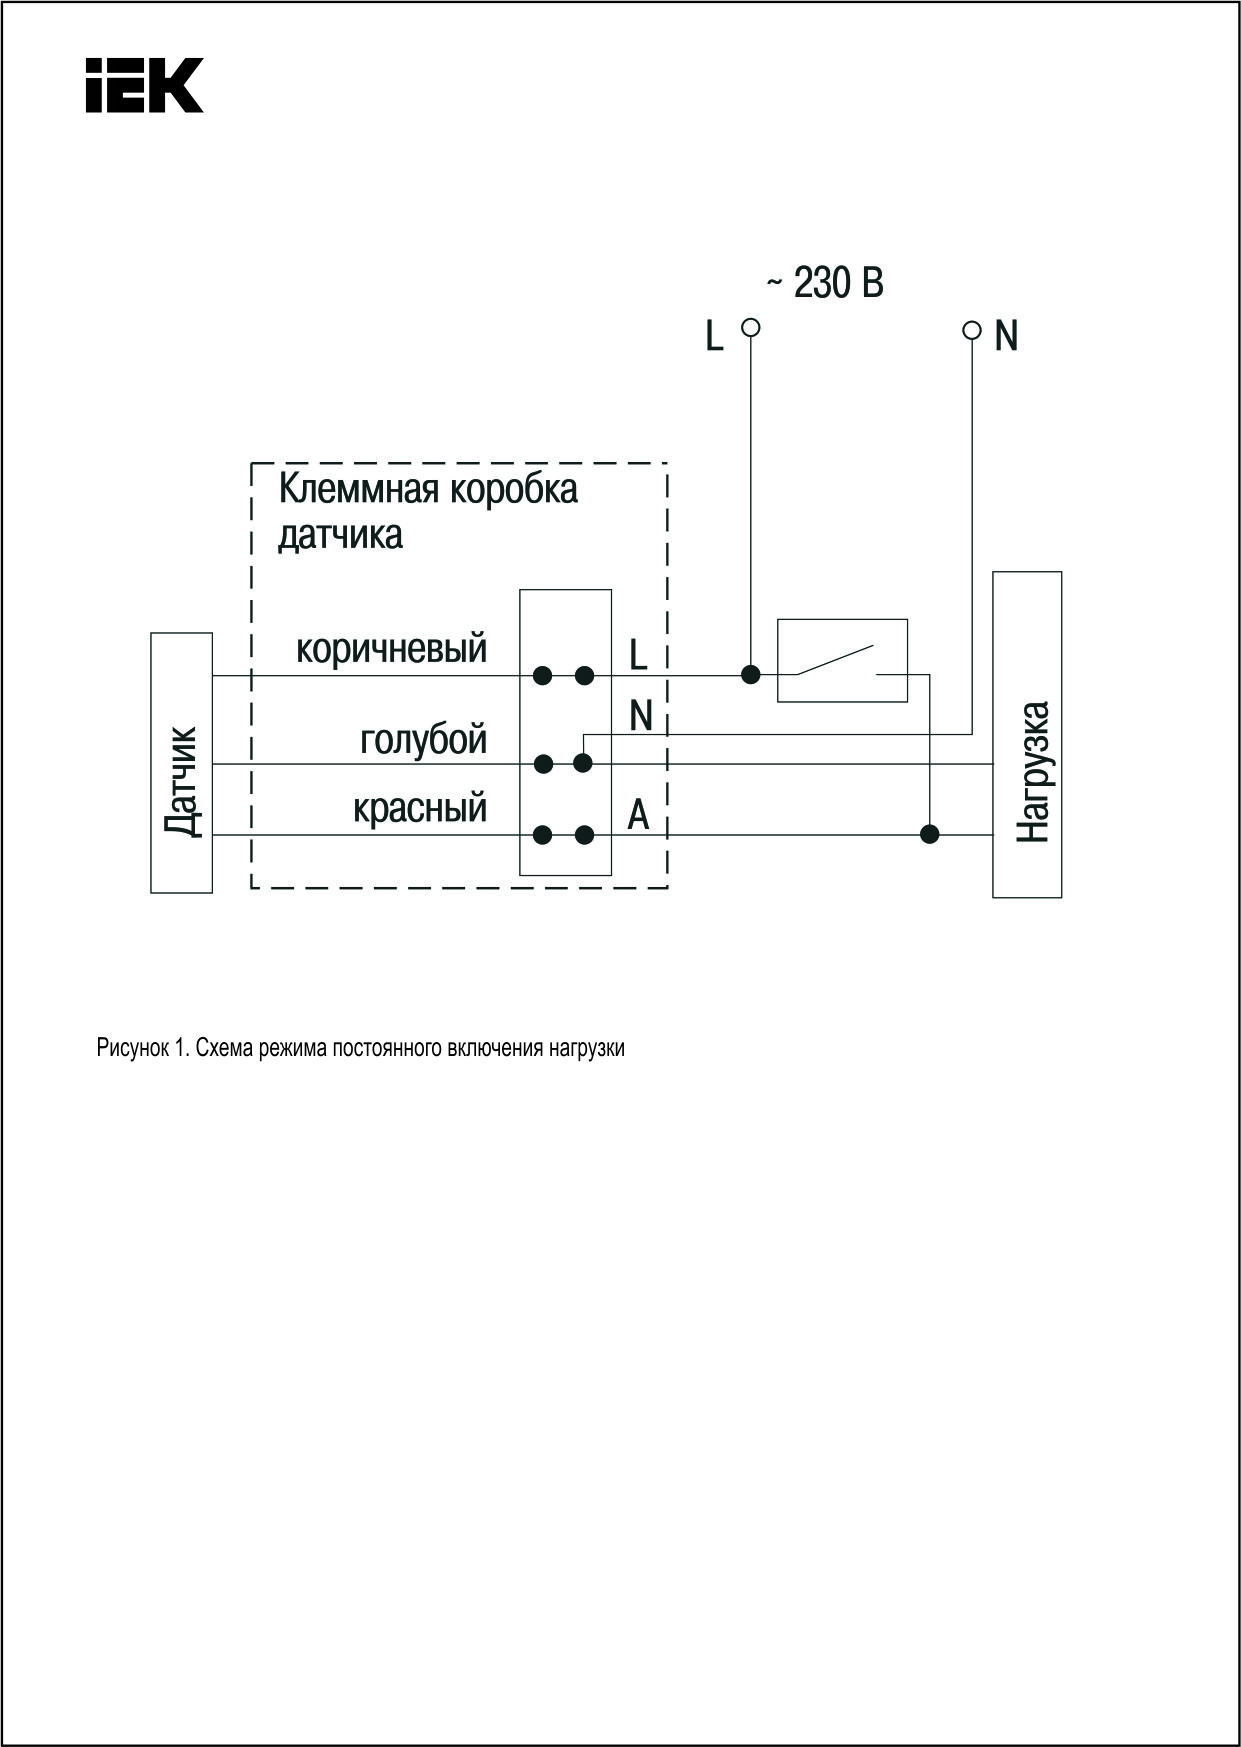 Инструкция к инфракрасным датчикам движения дд-024: технические характеристики